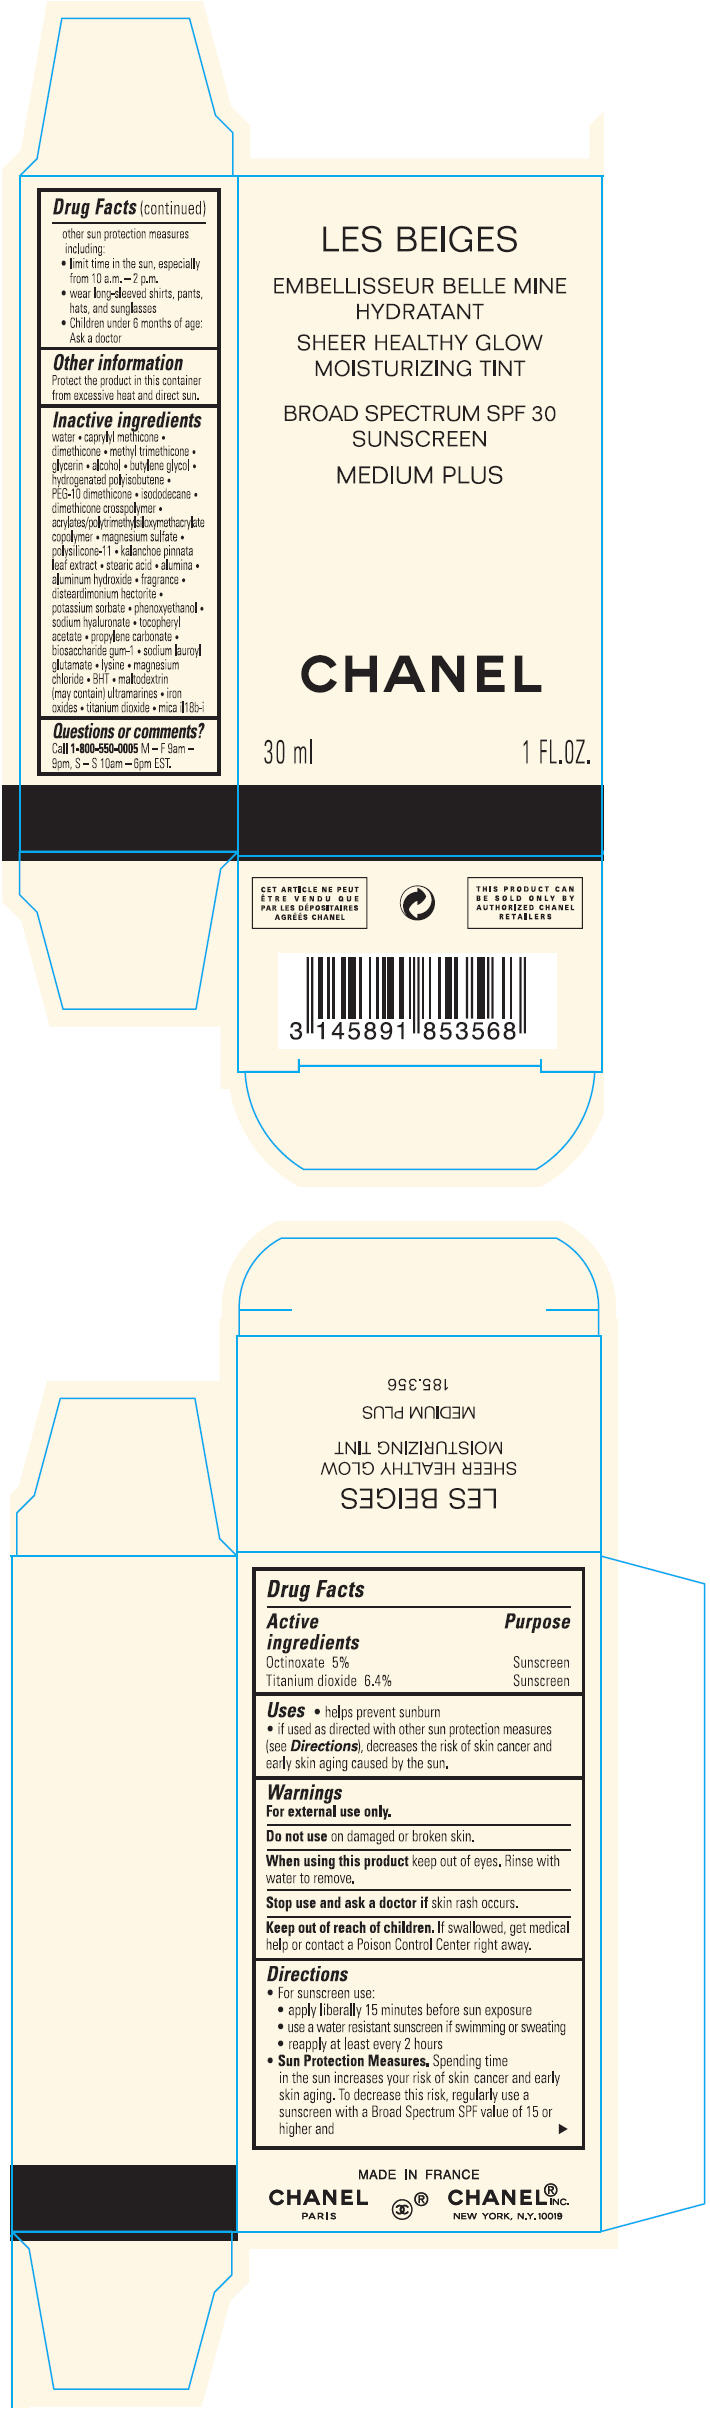 PRINCIPAL DISPLAY PANEL - 30 ml Bottle Carton - Medium Plus